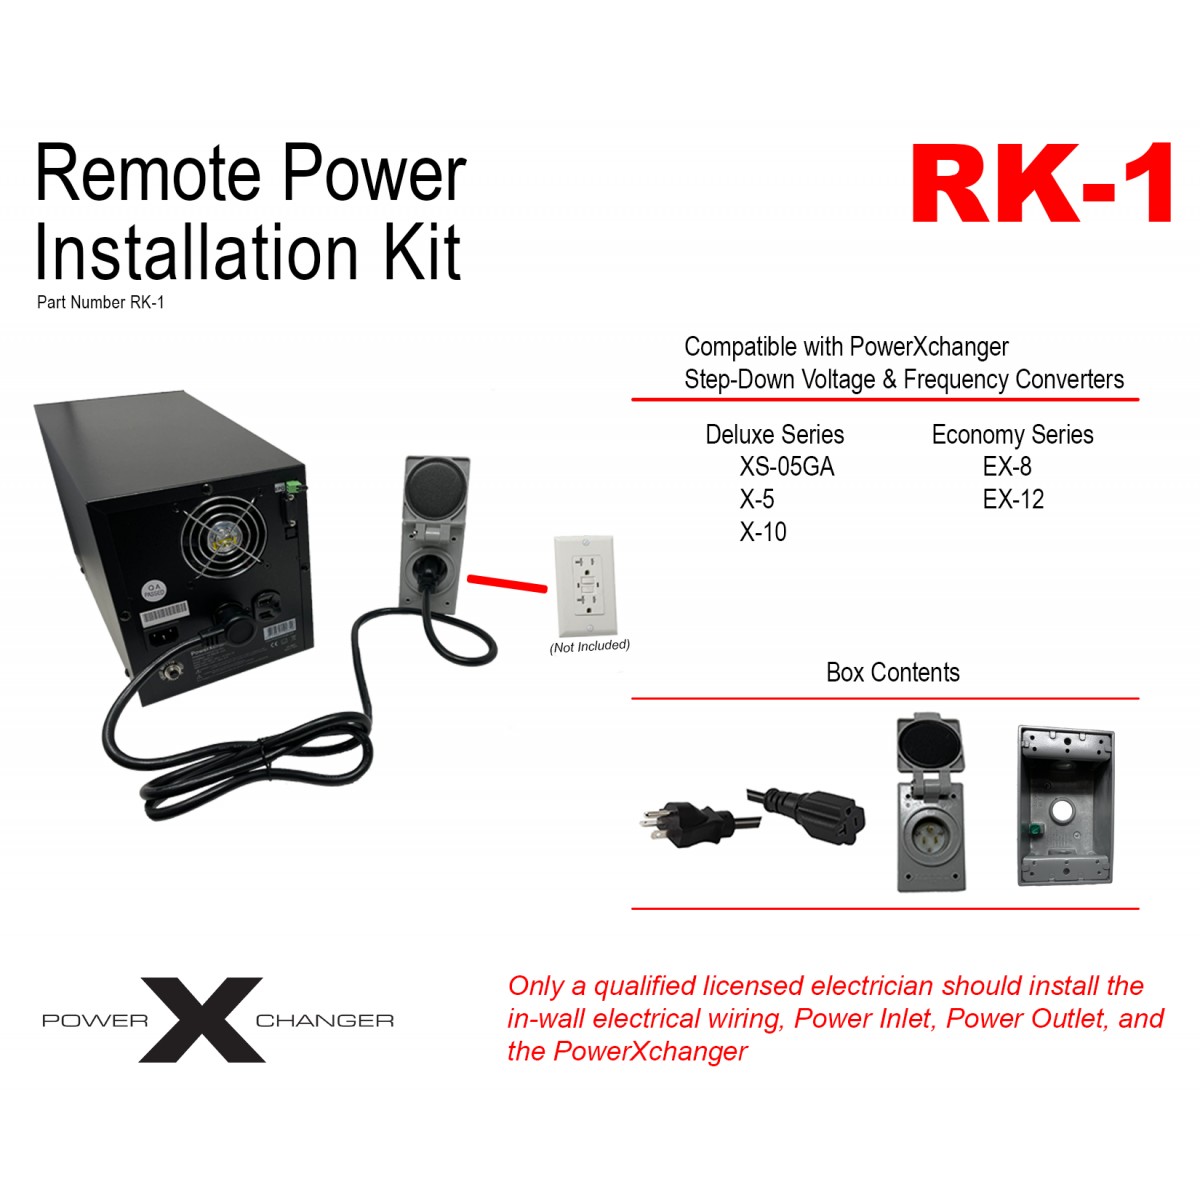 https://www.powerxchanger.com/store/553-thickbox_default/remote-power-installation-kit-rk-1.jpg